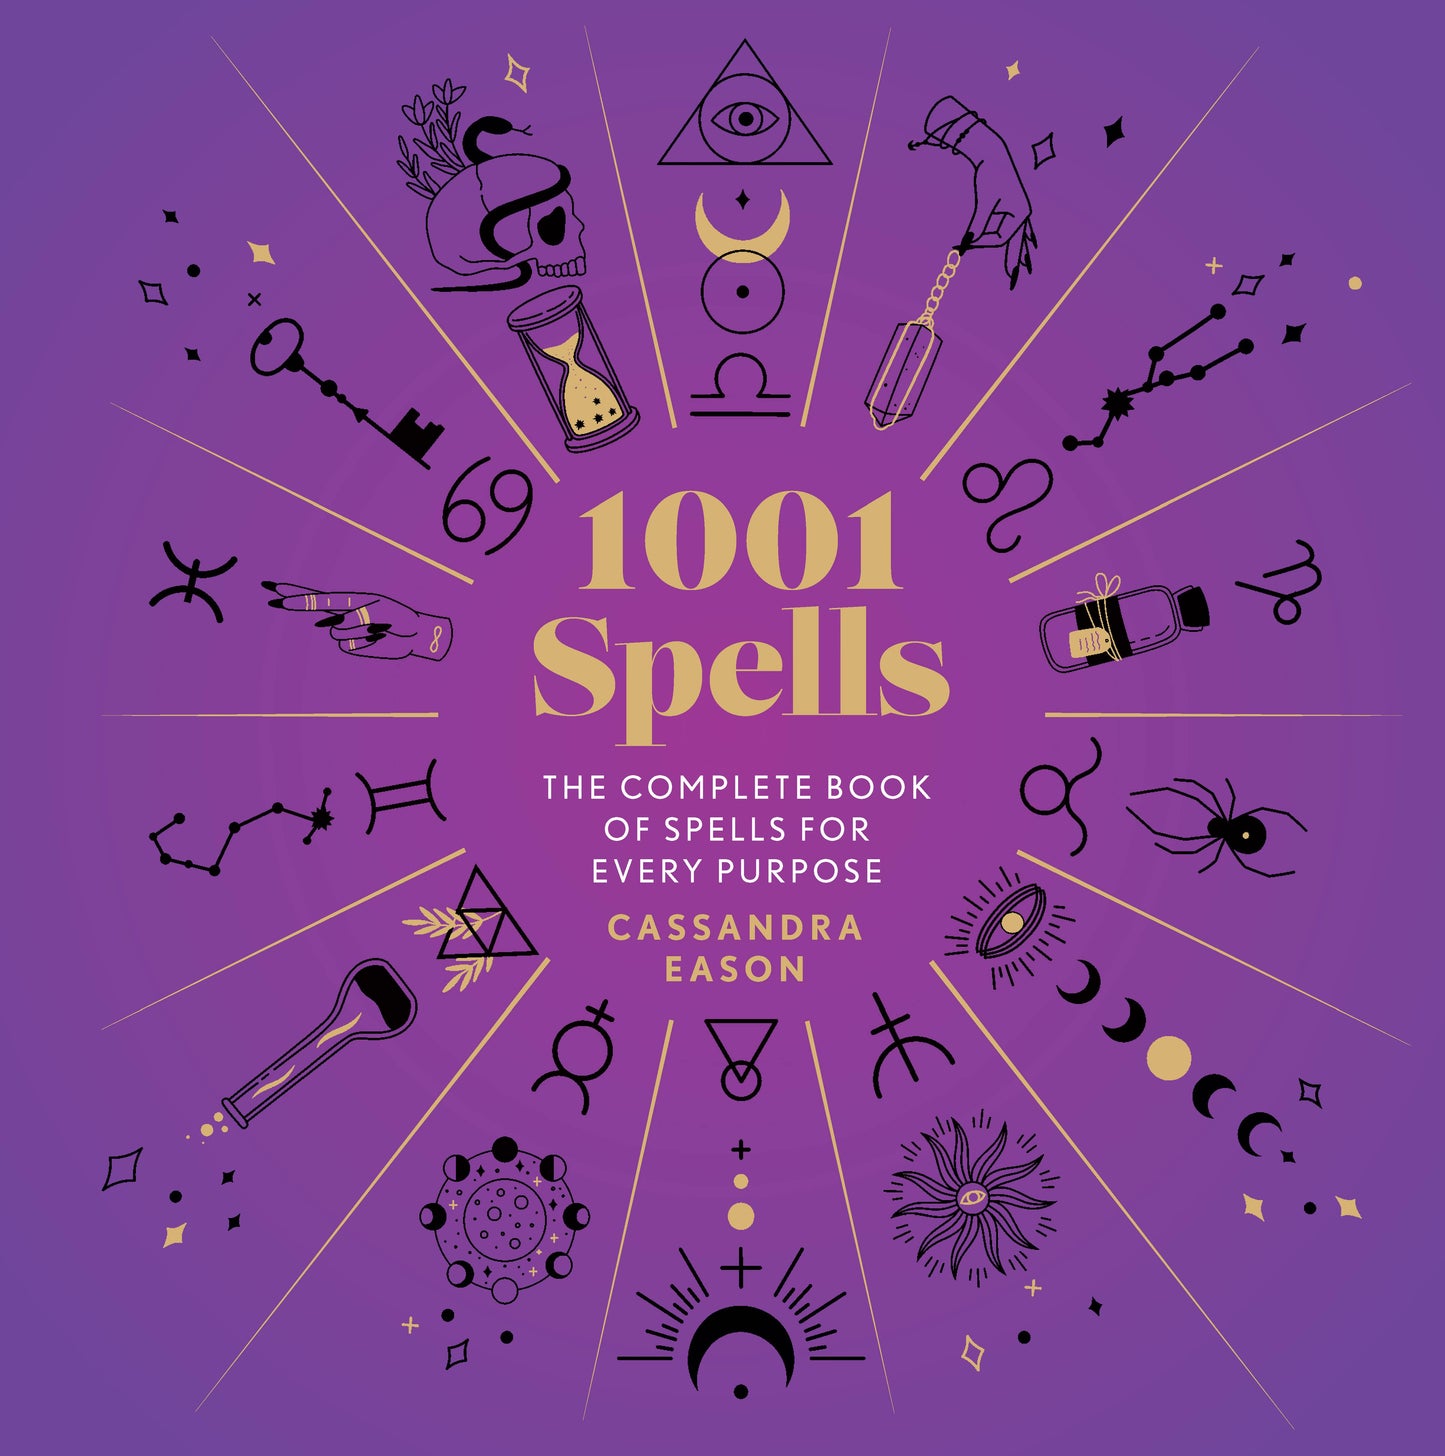 1001 Spells by Cassandra Eason